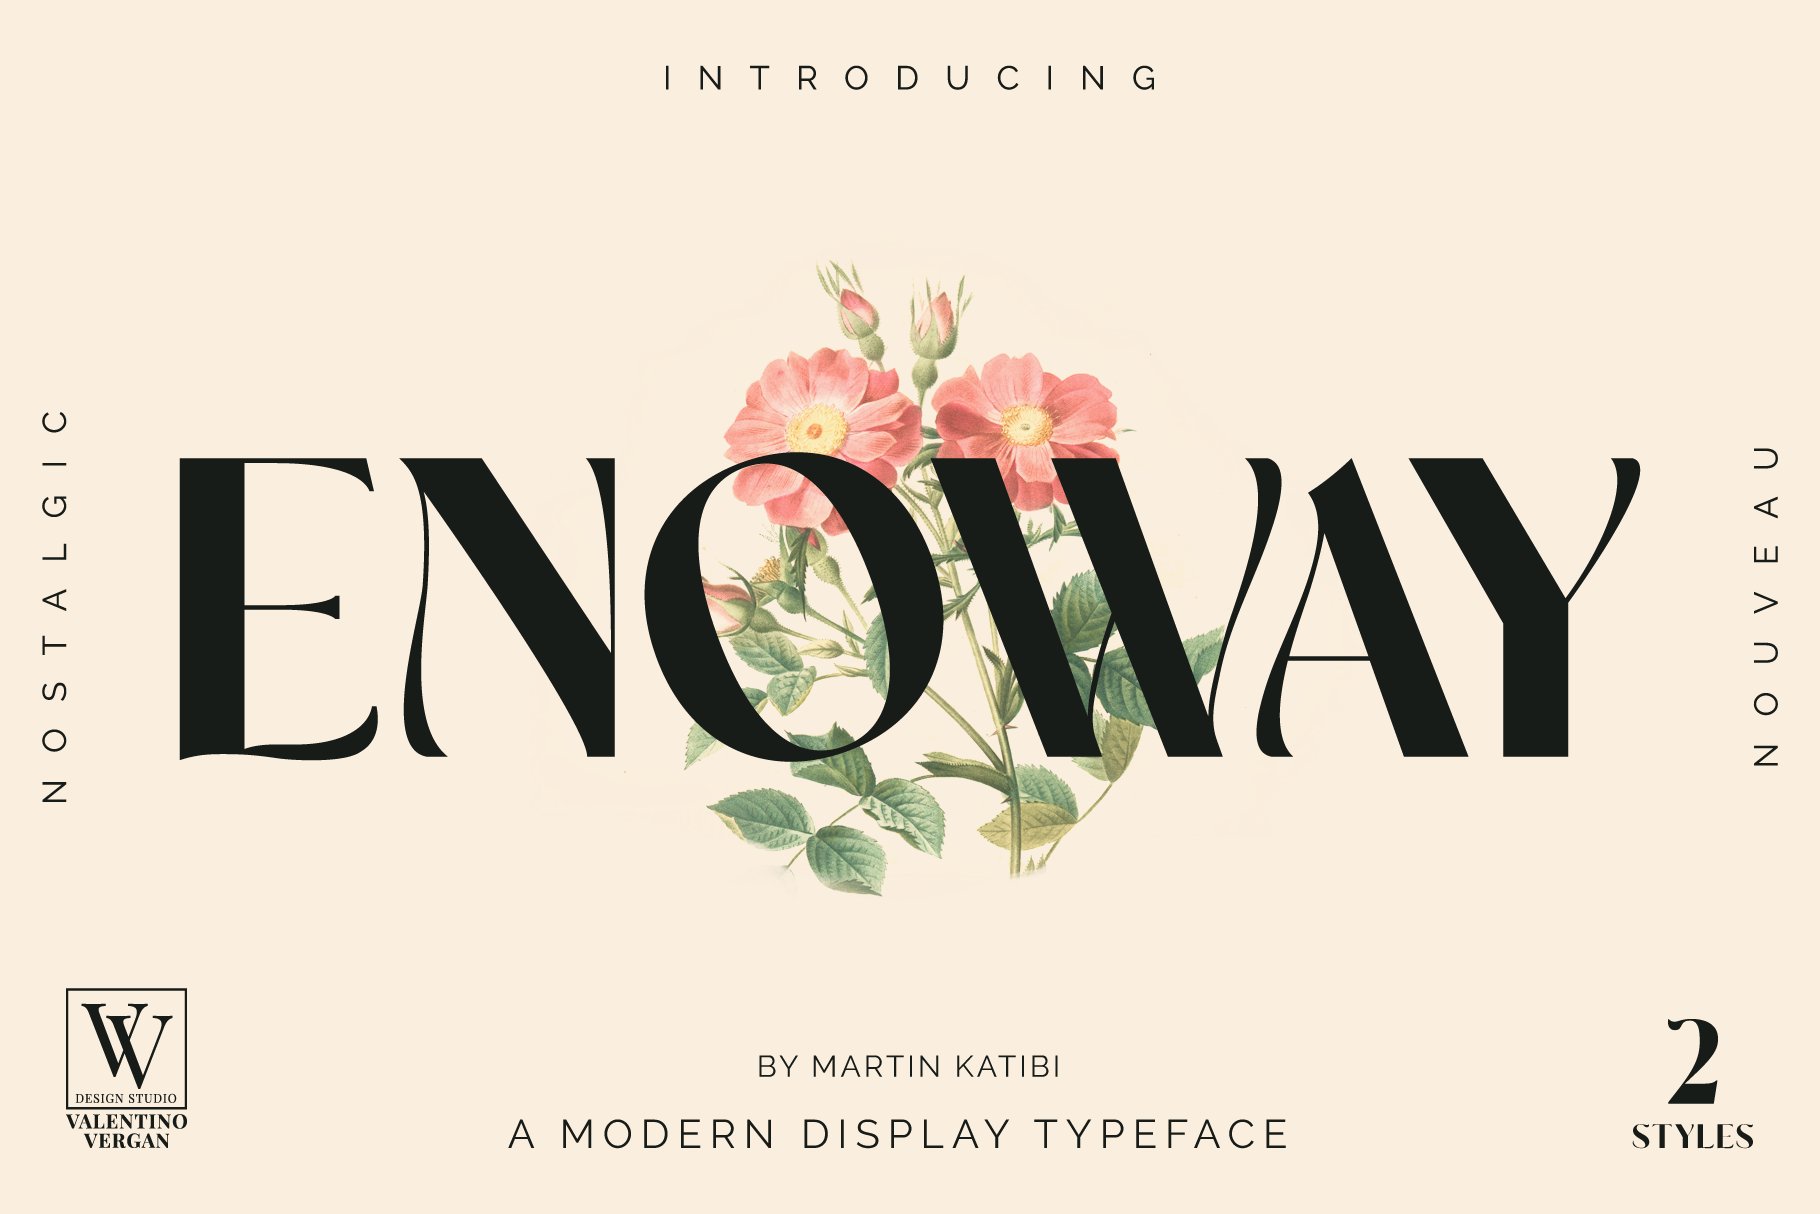 Enoway - Art Nouveau Typeface cover image.